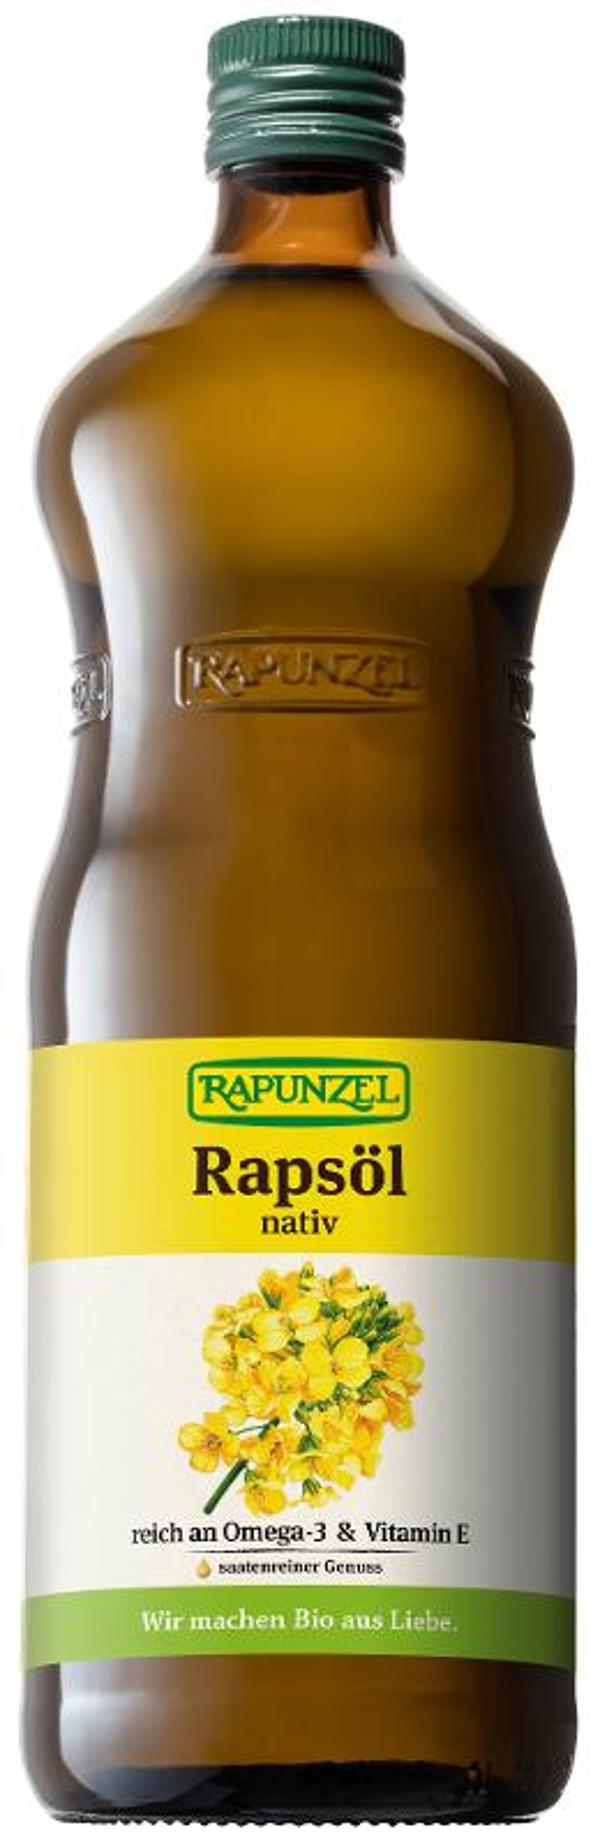 Produktfoto zu Rapsöl nativ 1 Liter